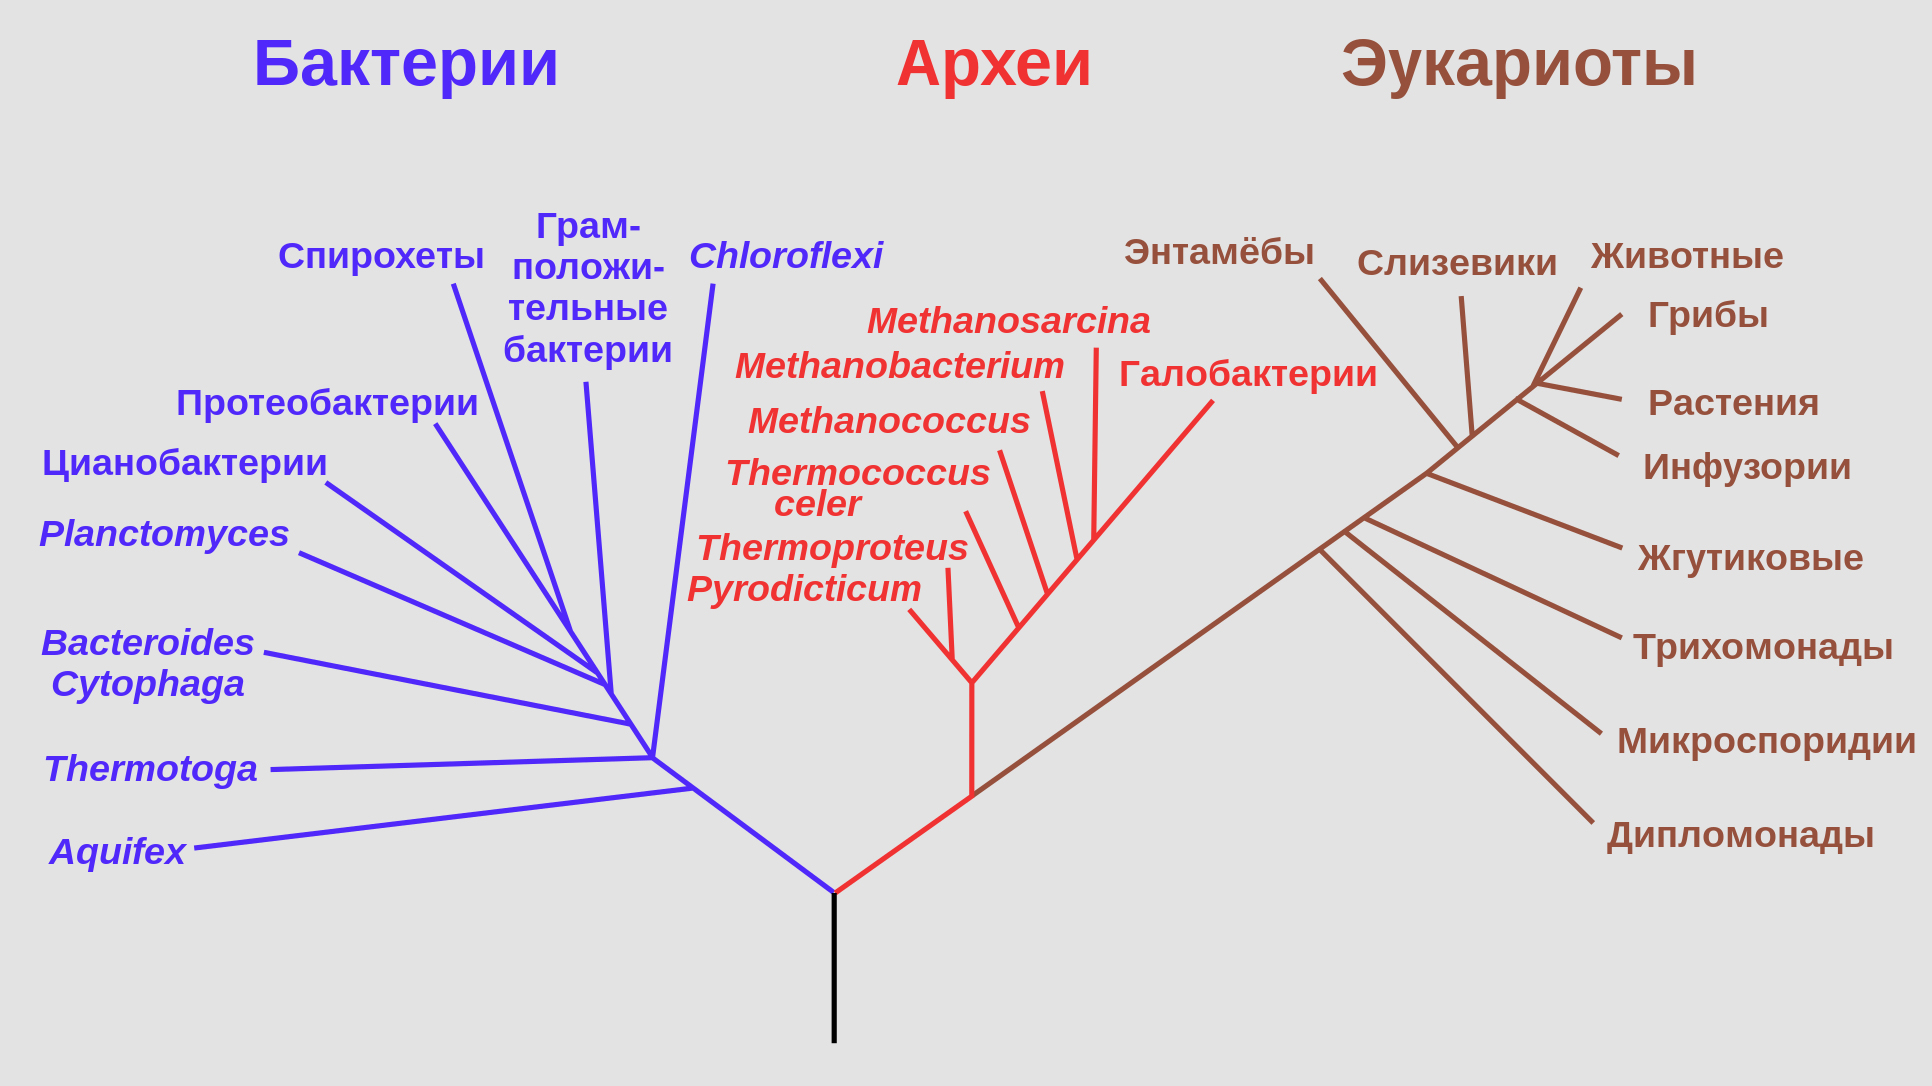 Филогенетическое древо, построенное на основании анализа рРНК, показывает разделение бактерий, архей и эукариот. Фото © Wikipedia